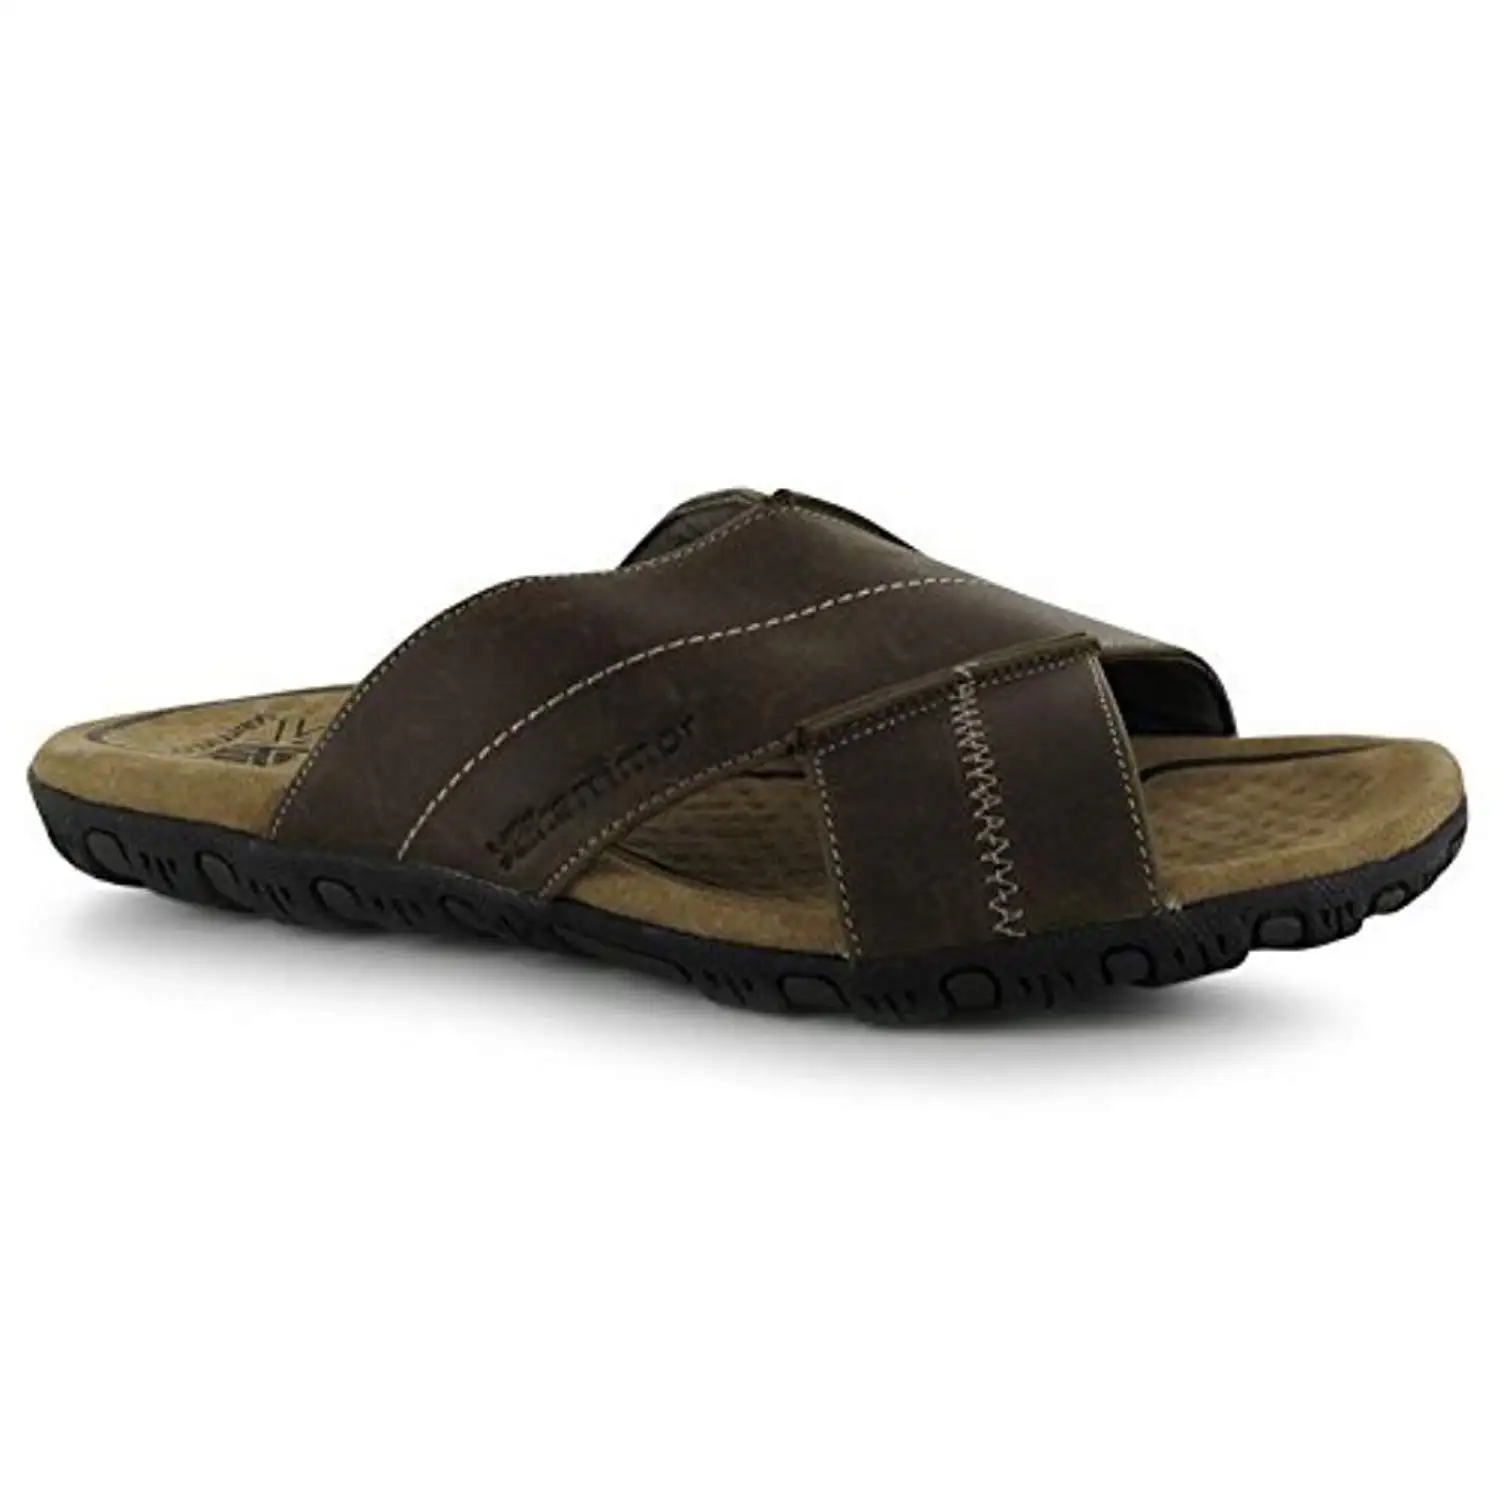 karrimor leather sandals